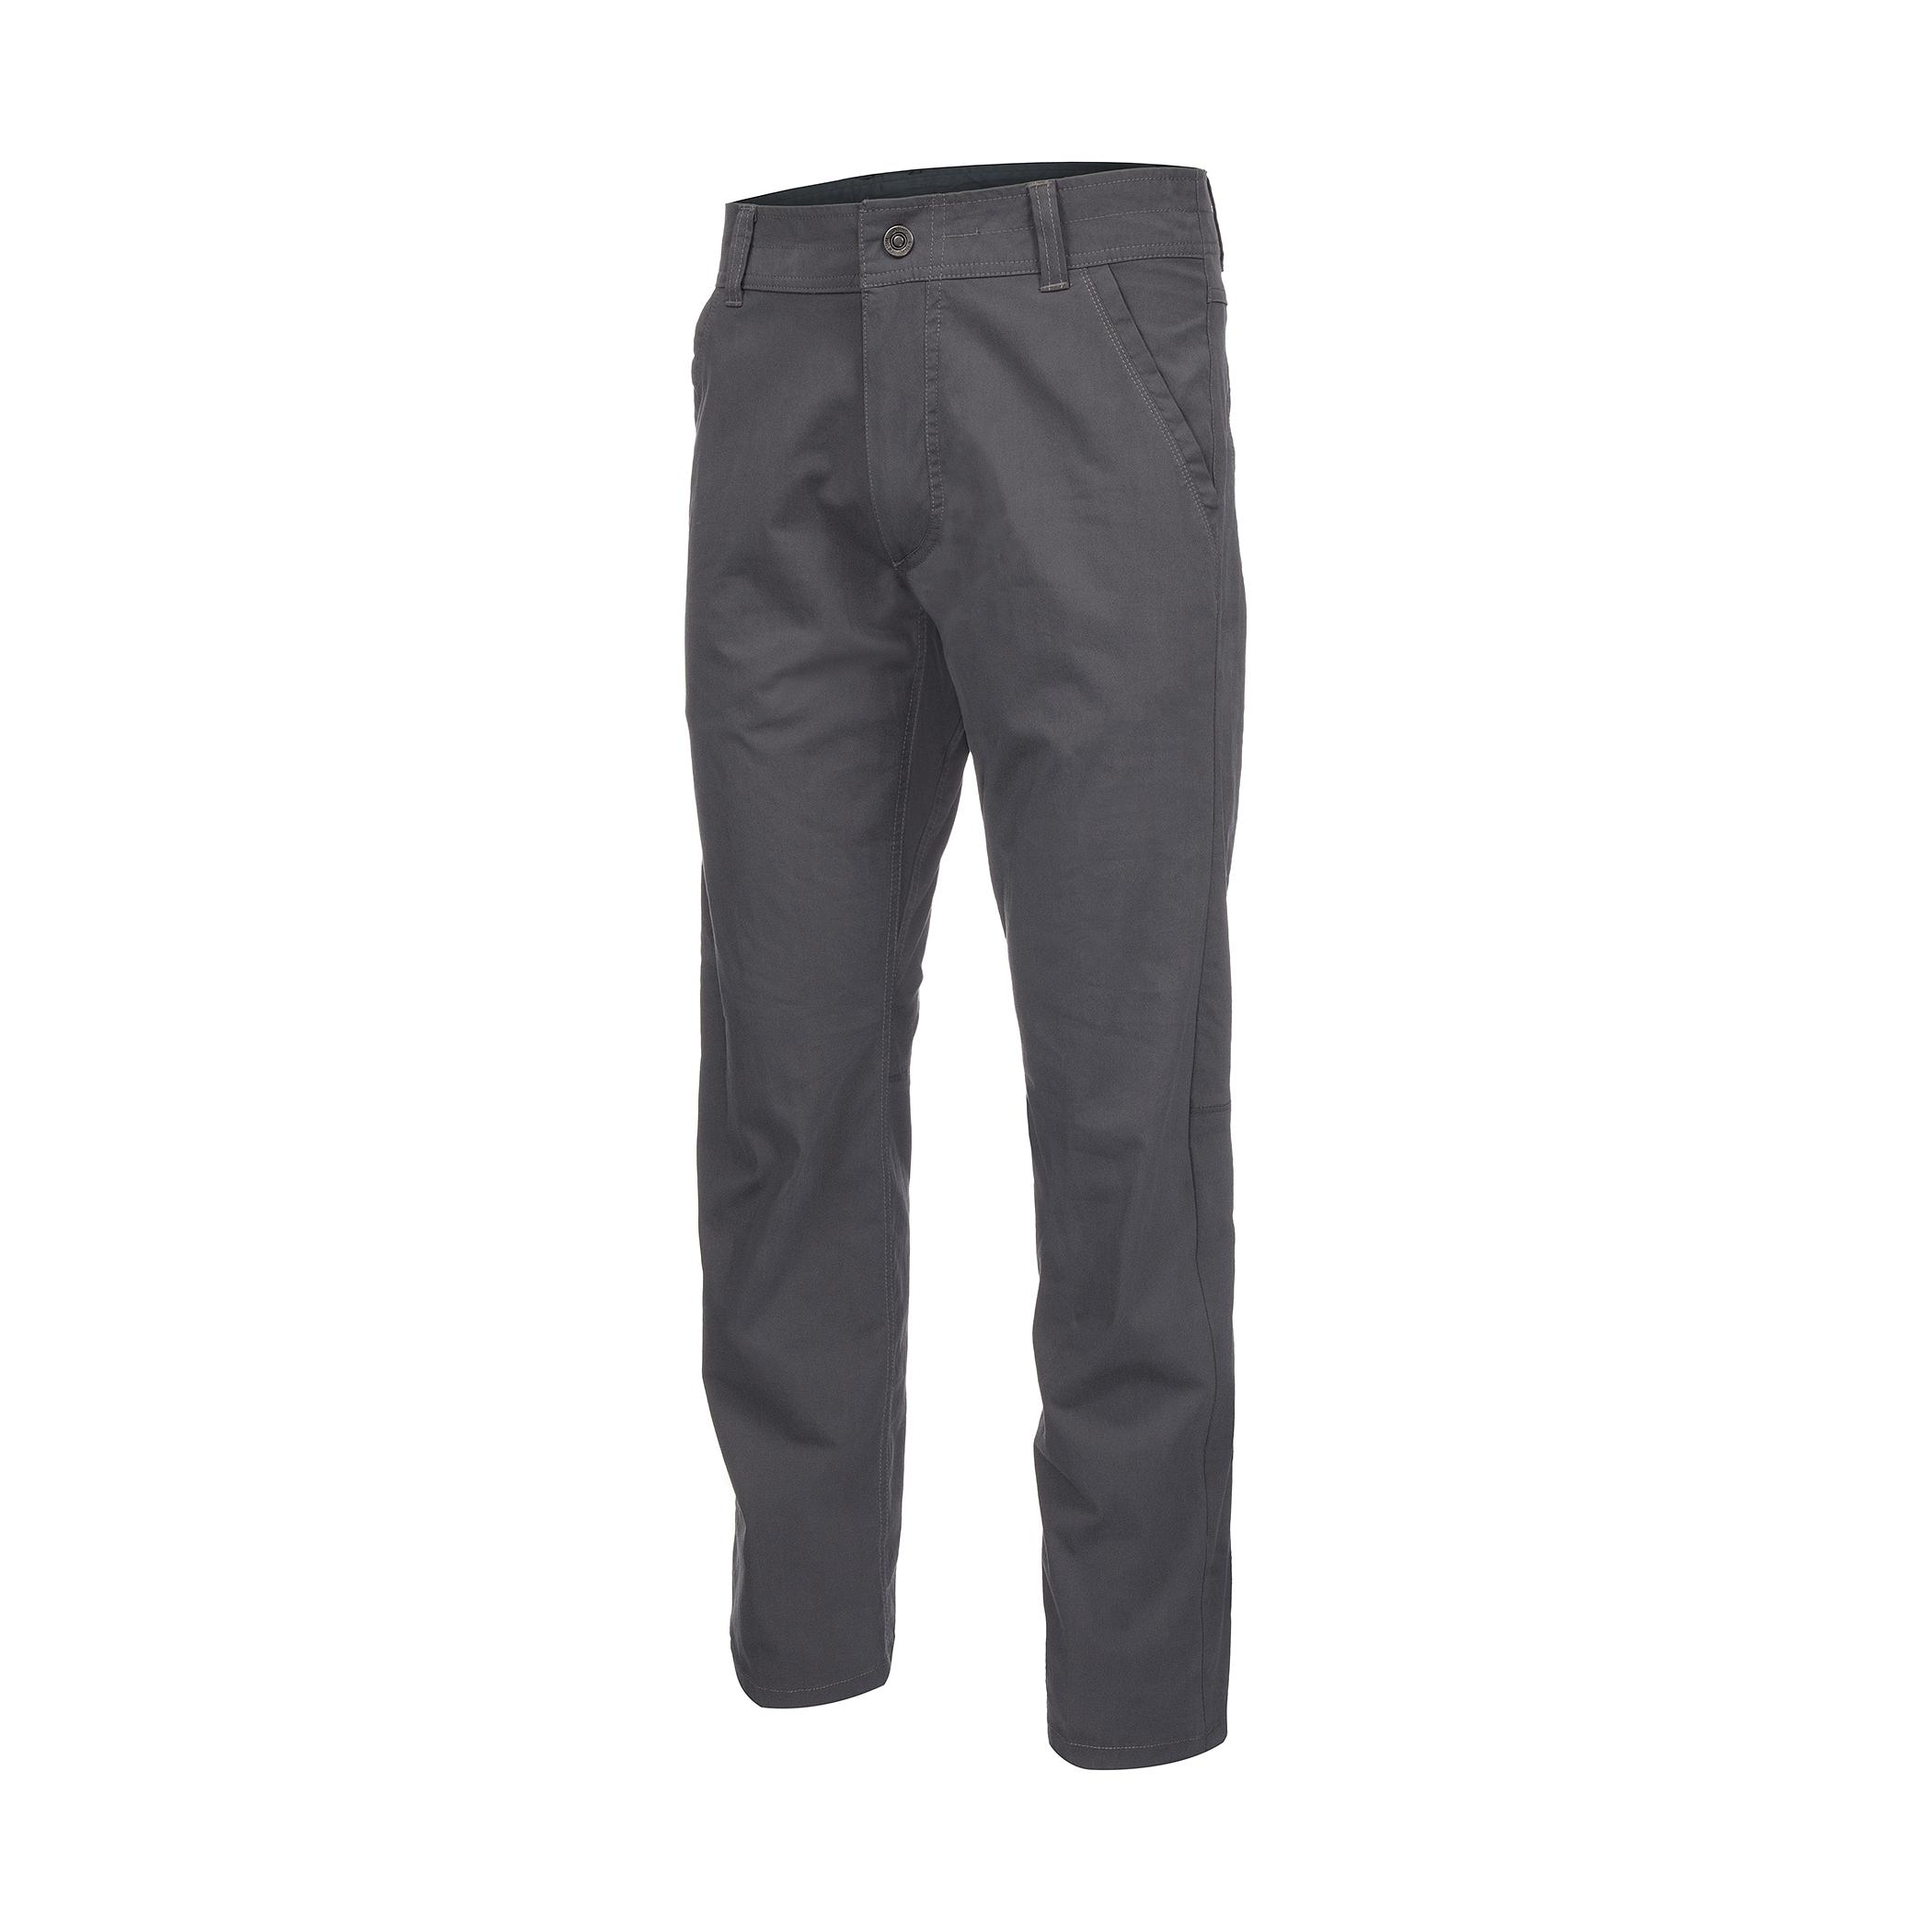 Mast General Store | Men's Slax Pants